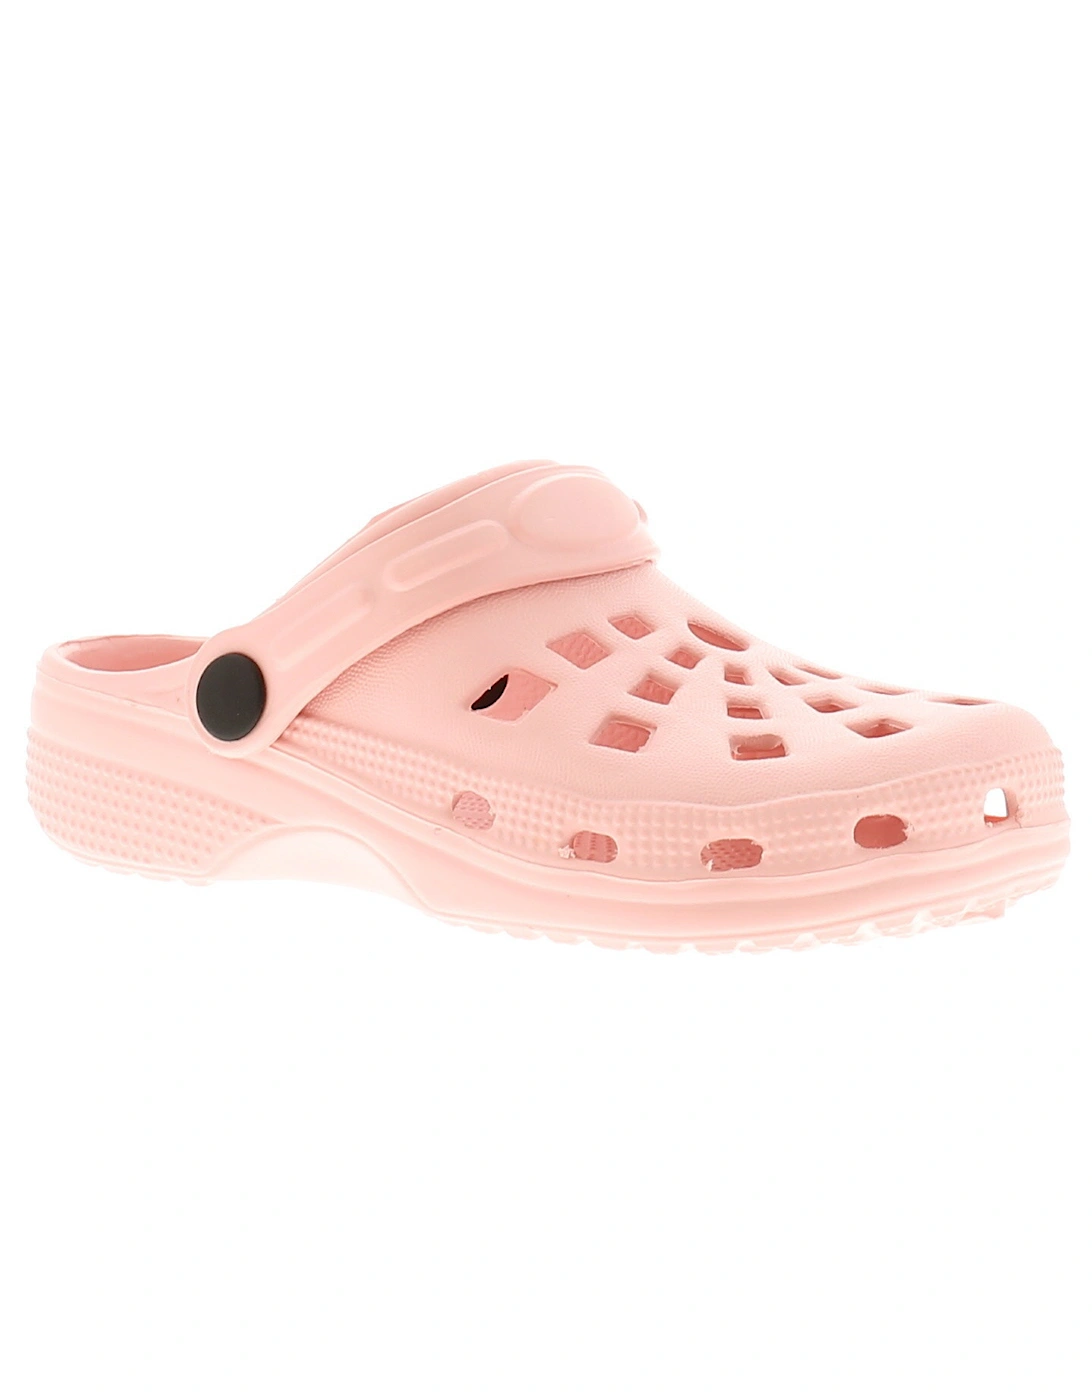 Girls Sandals Infants Clogs Sliders Pop pink UK Size, 6 of 5